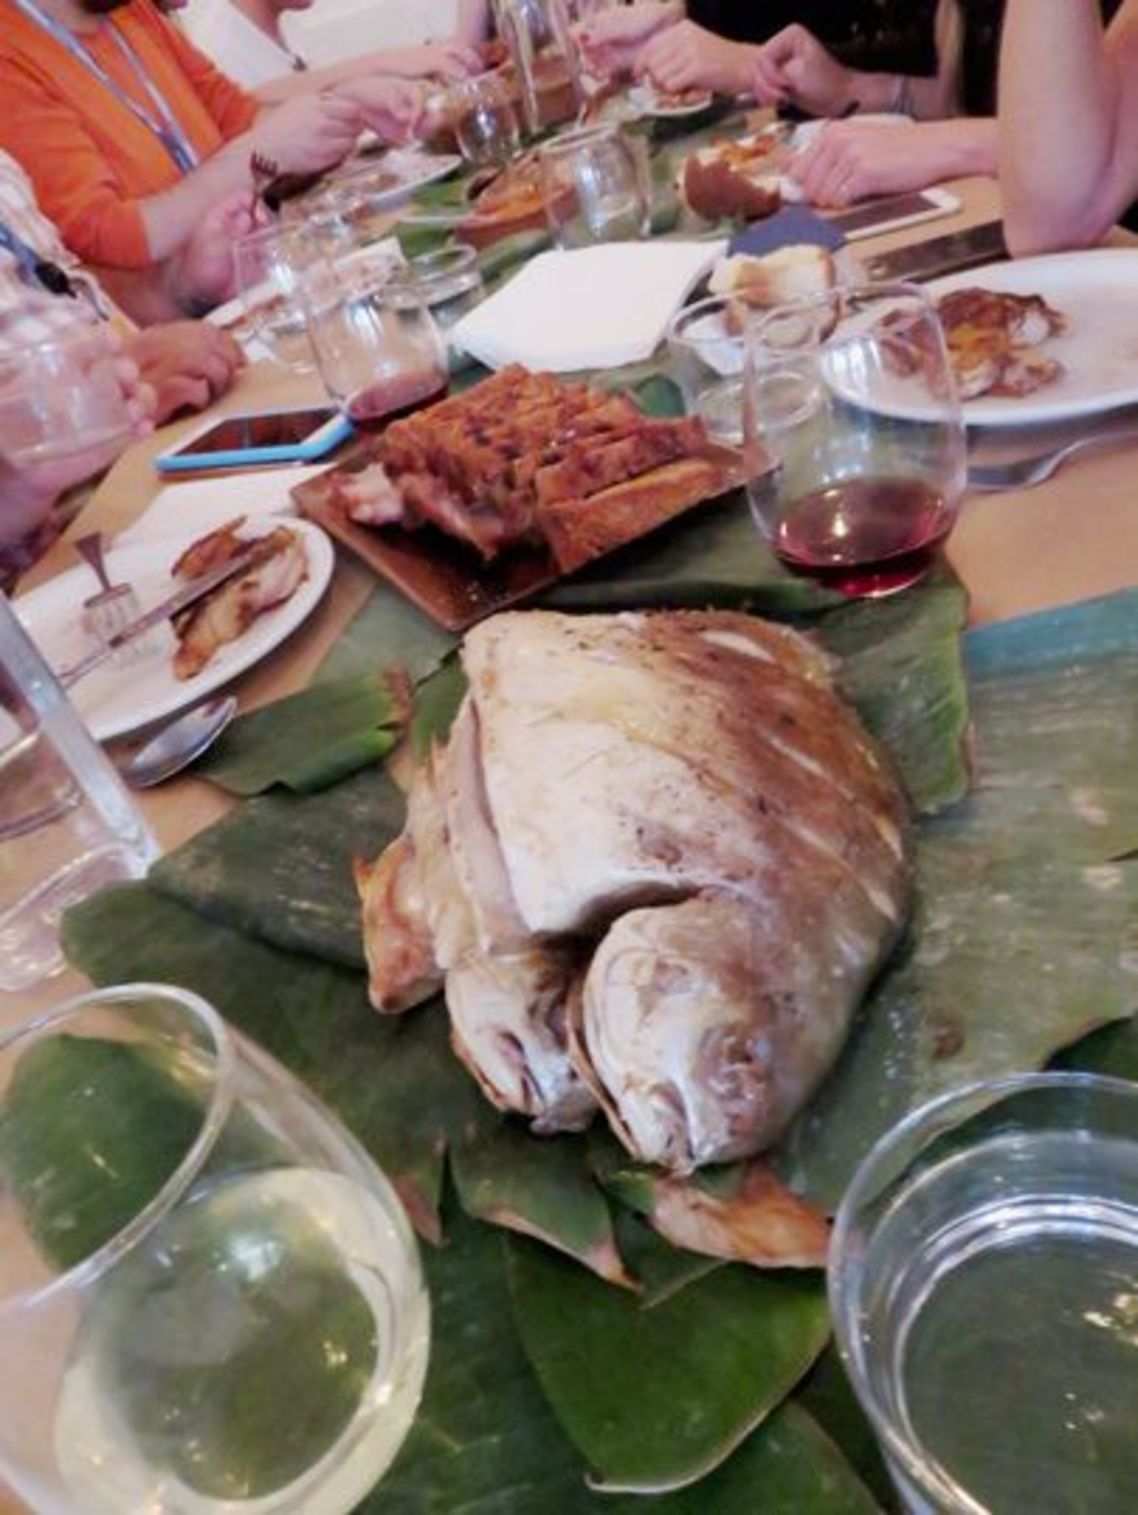 出来上がった魚料理は、フィリピンの伝統に基づきバナナの皮の上に置かれた。